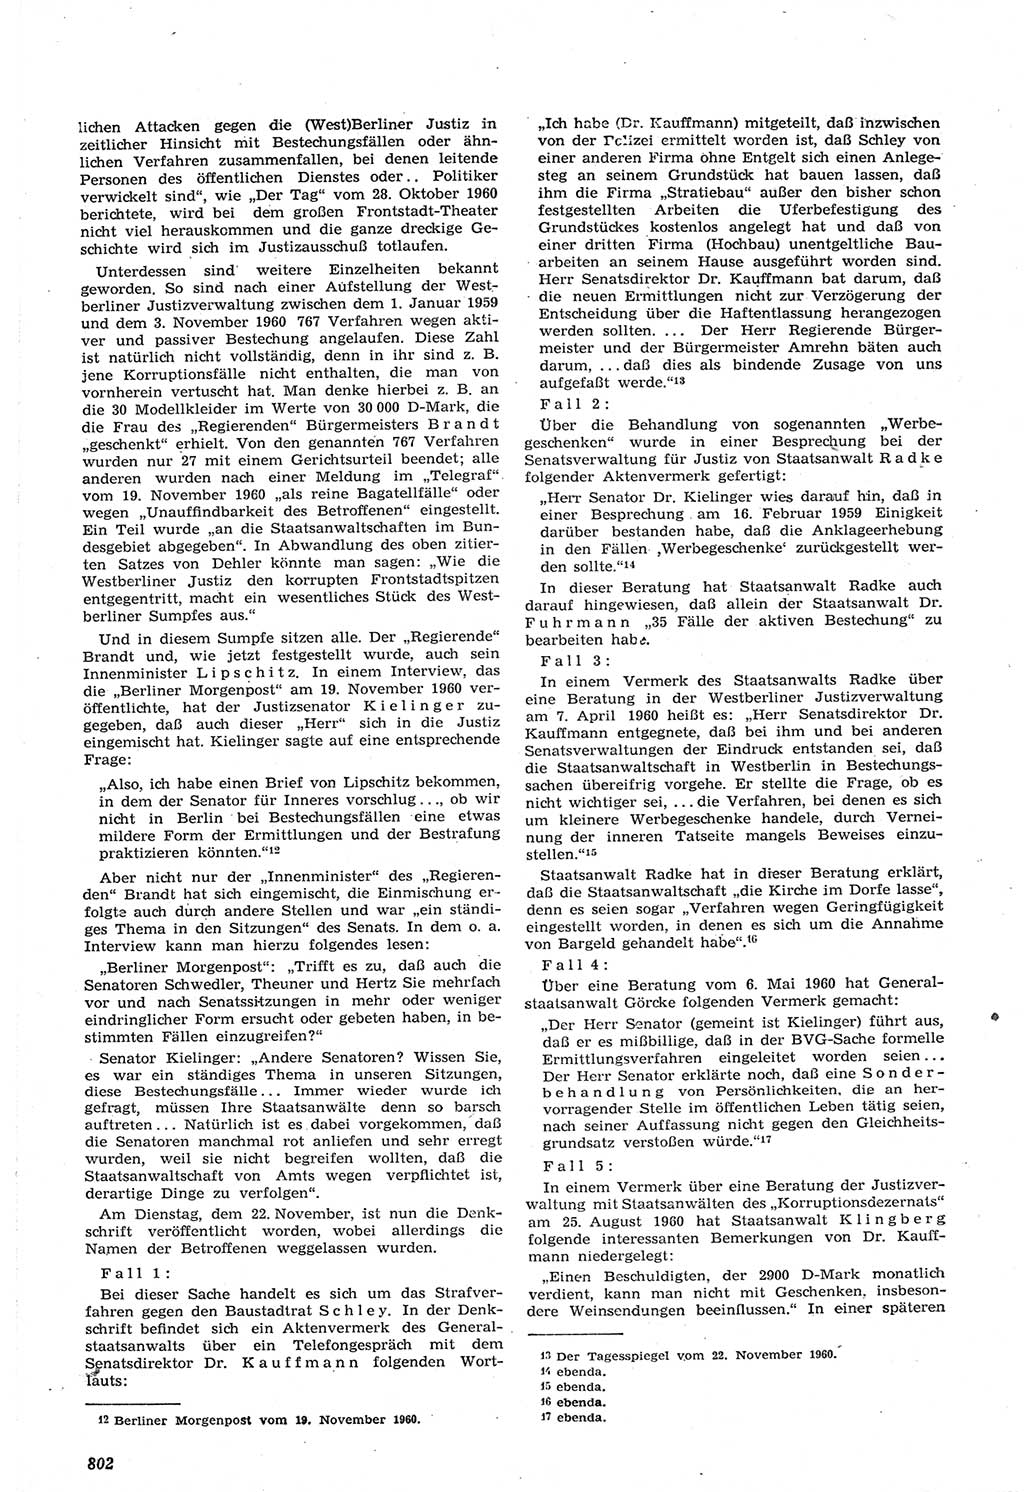 Neue Justiz (NJ), Zeitschrift für Recht und Rechtswissenschaft [Deutsche Demokratische Republik (DDR)], 14. Jahrgang 1960, Seite 802 (NJ DDR 1960, S. 802)